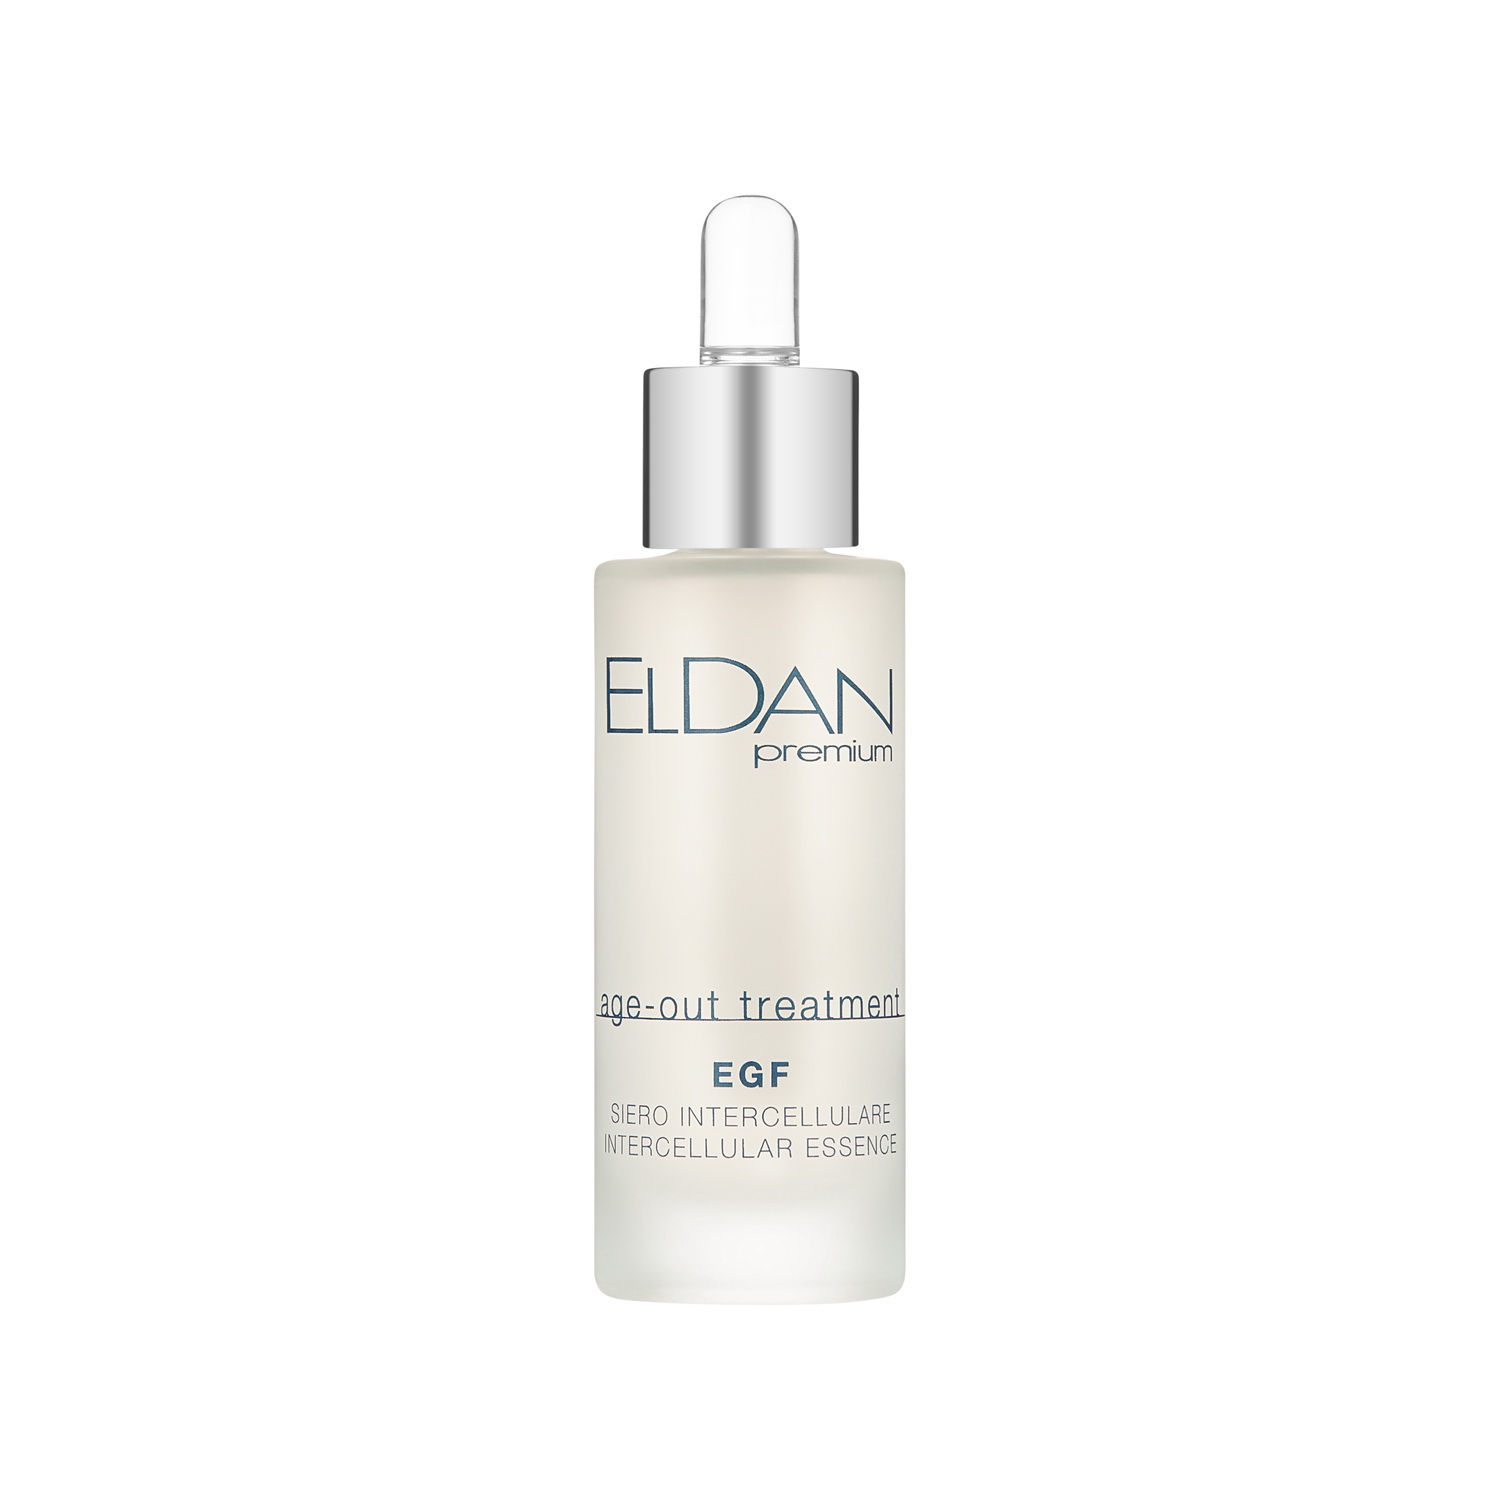 Сыворотка для лица Eldan Cosmetics EGF Intercellular Essence регенерирующая, 30 мл